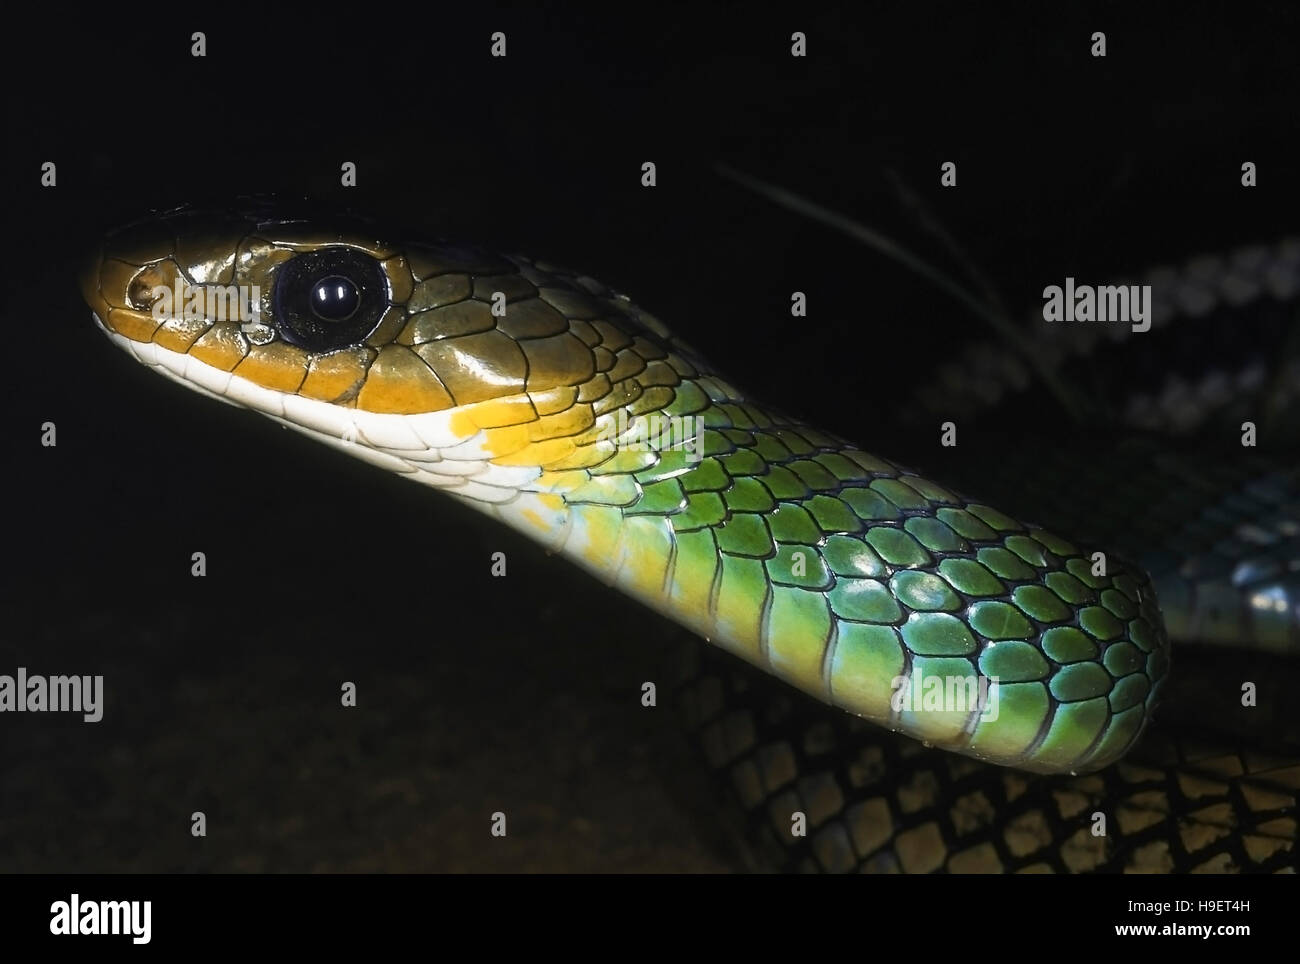 Grüne Ratte Schlange, ptyas, coluber nigromarginatus. close up von Kopf und Hals. Erwachsene von changlang Bezirk, Arunachal Pradesh, Indien. Stockfoto